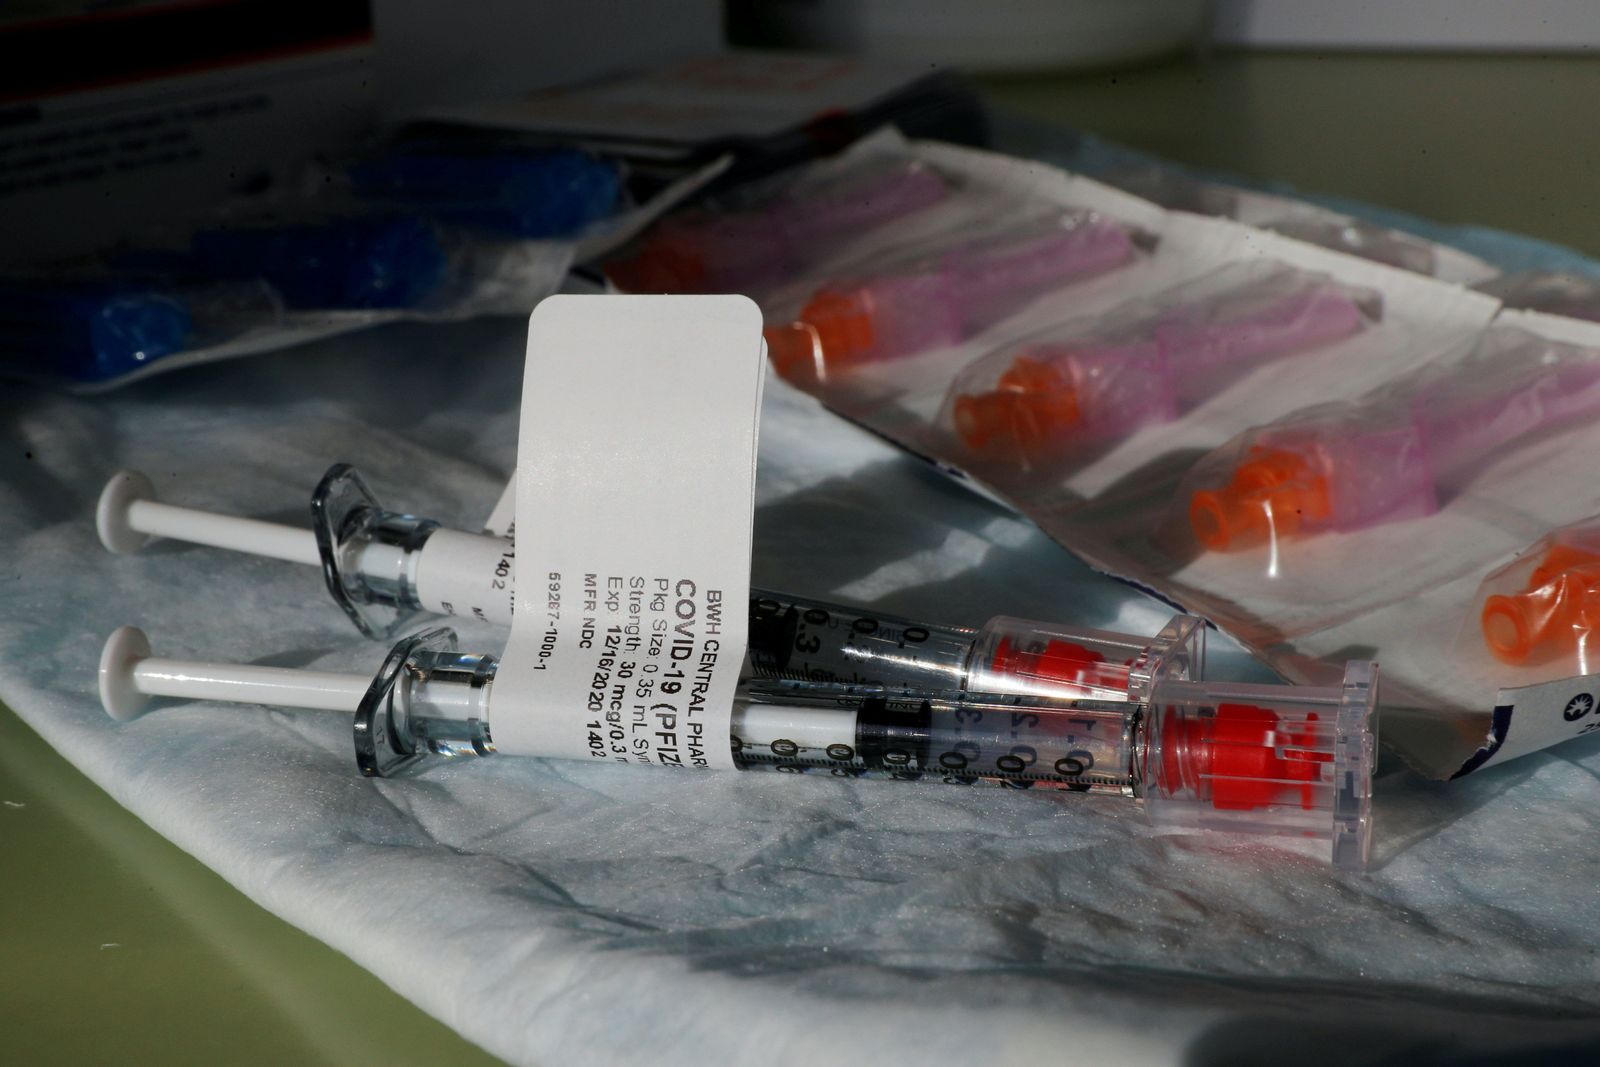  تطعيمات كورونا يتم تقديمها في مستشفى بريغهام وومان في بوسطن في 17-12-2020 - REUTERS